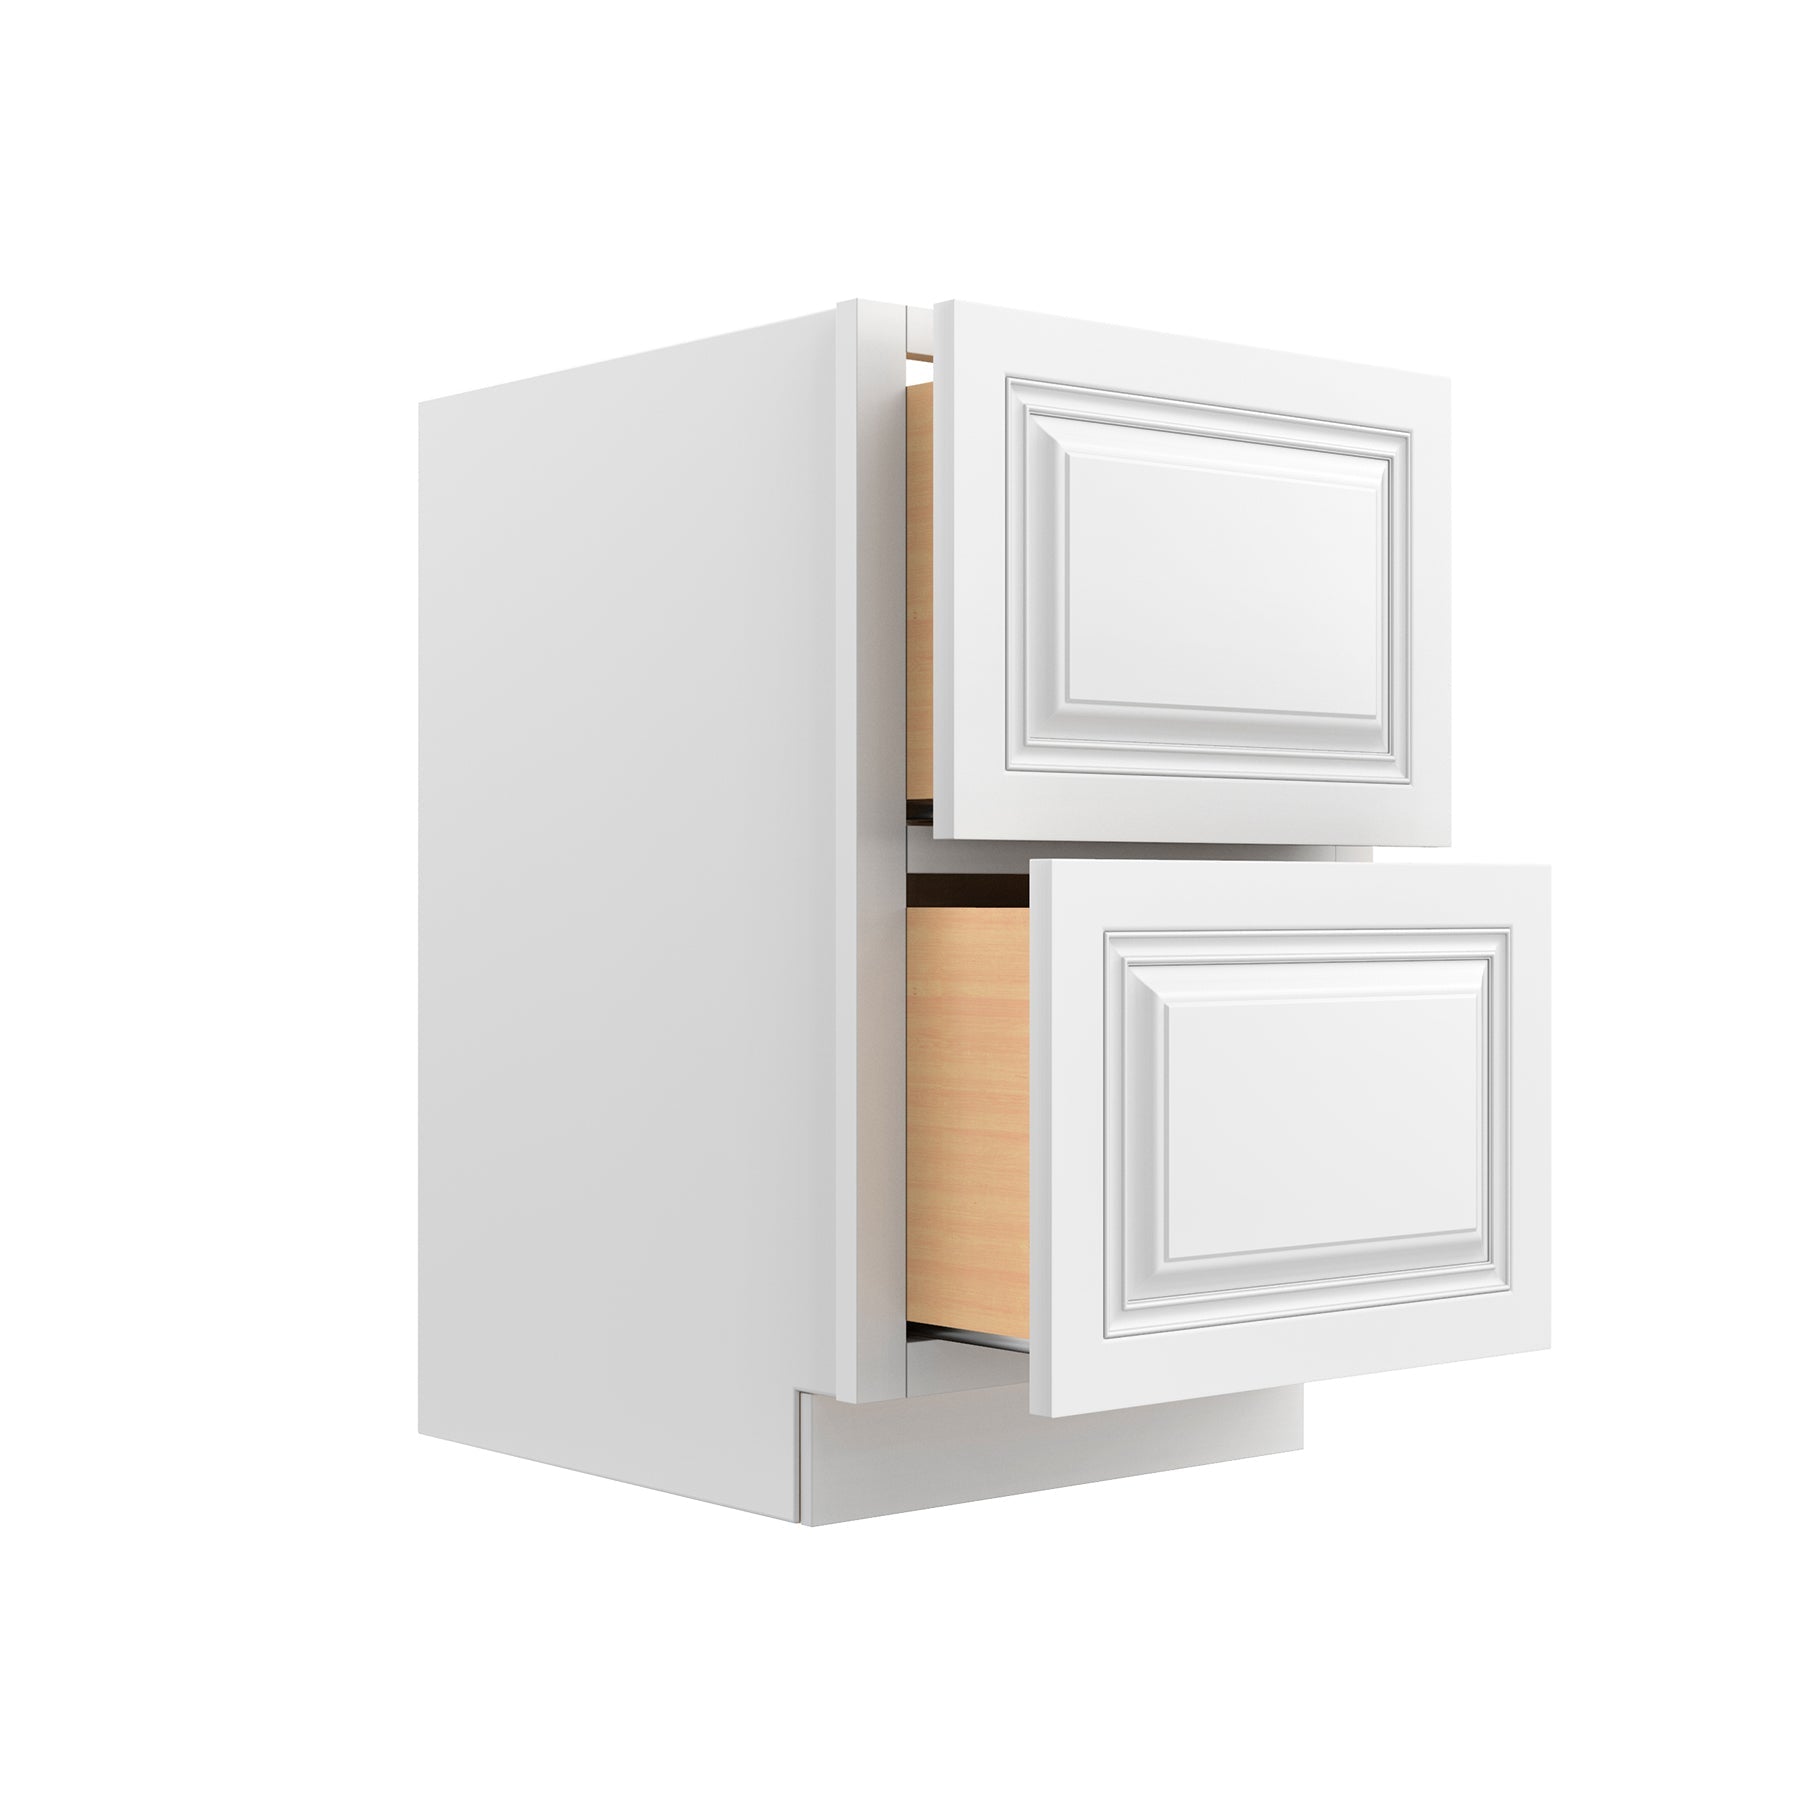 RTA - Park Avenue White - 2 Drawer Base Cabinet | 36"W x 34.5"H x 24"D